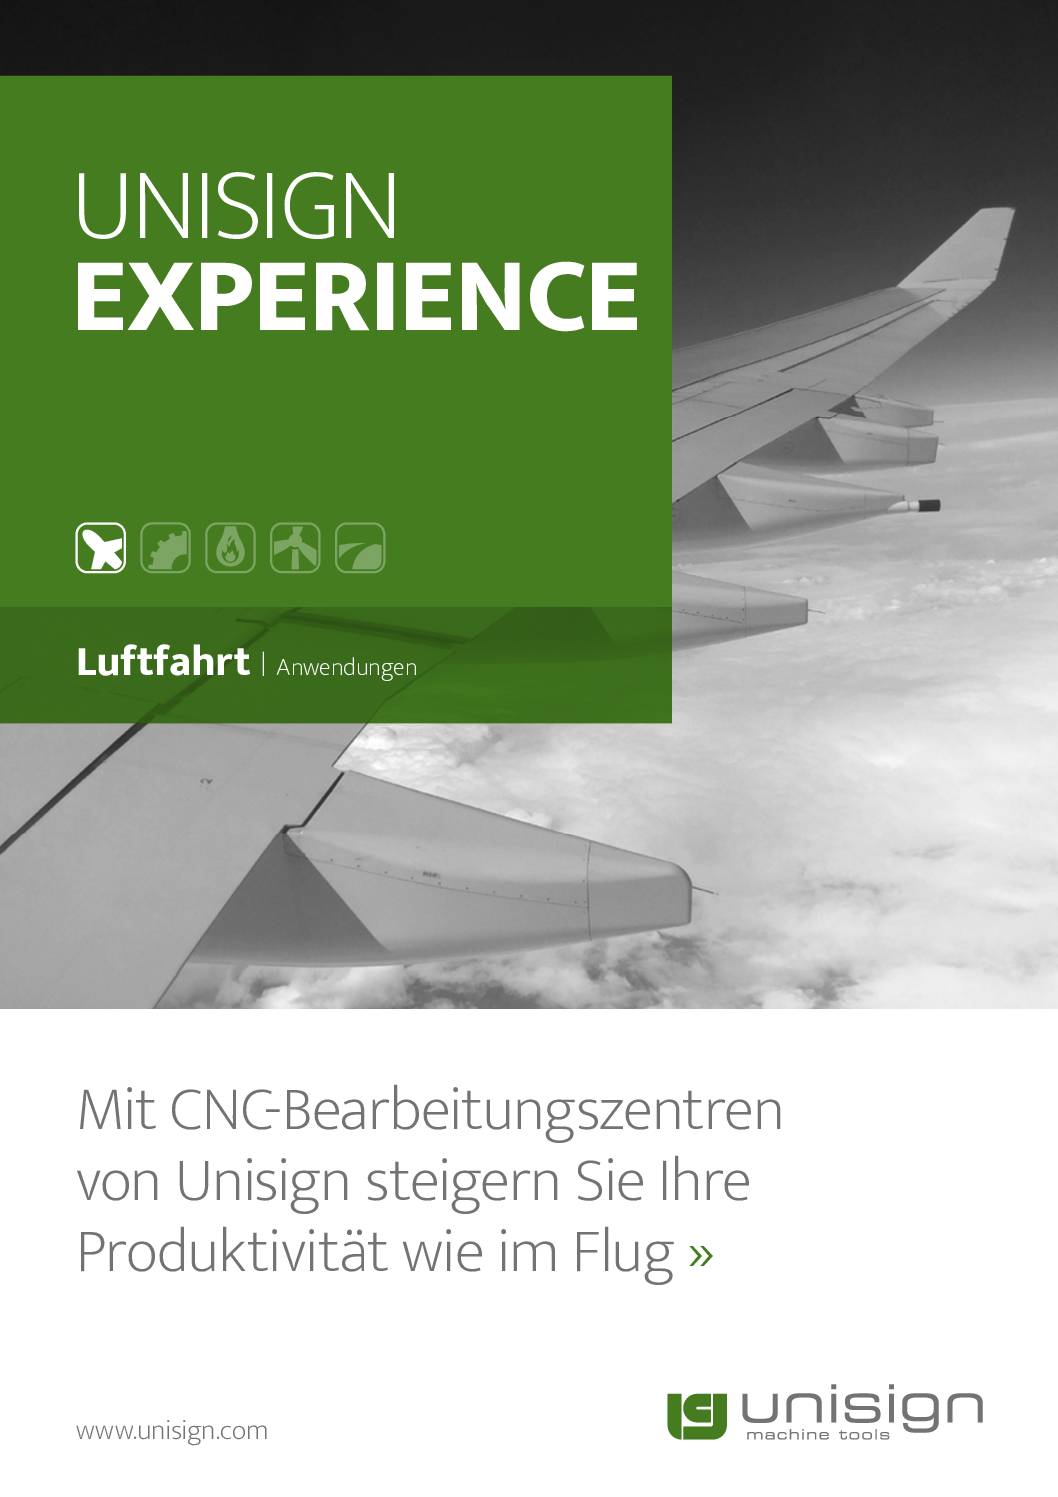 Experience_Luftfahrt_Anwendungen-DE